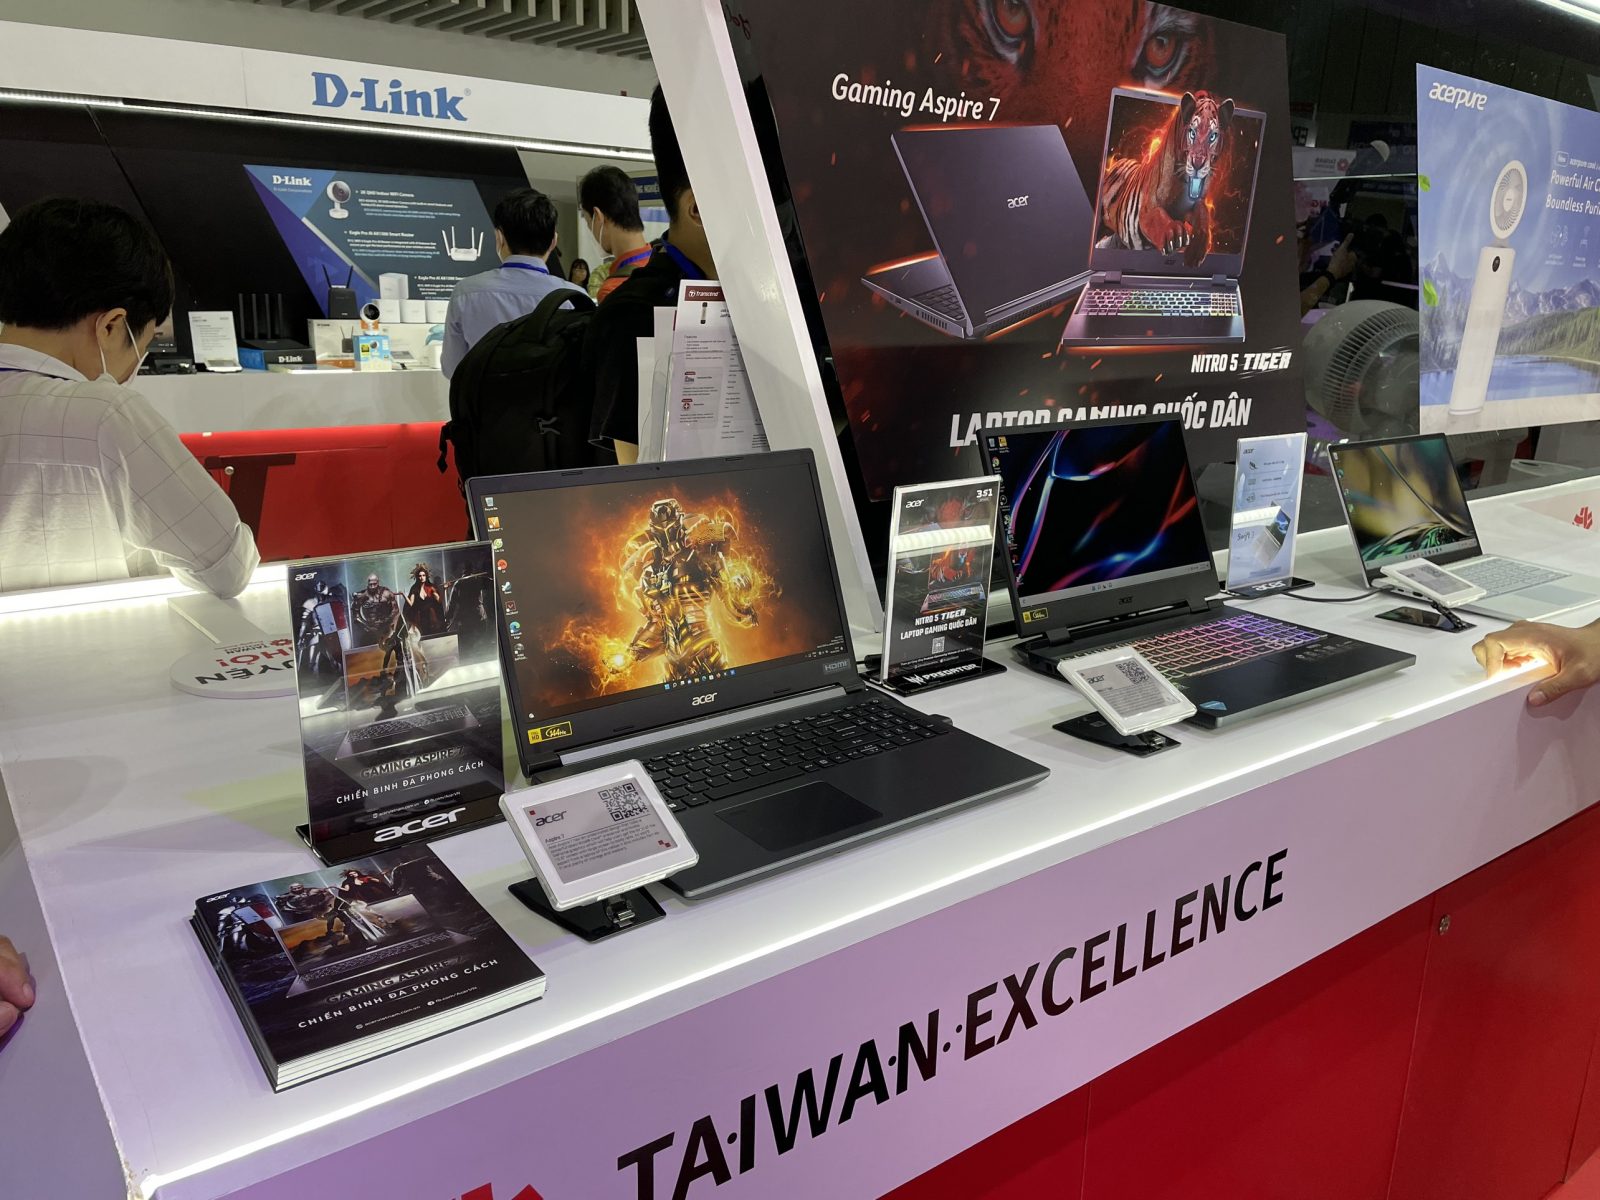 Trải nghiệm không gian Taiwan Excellence tại Triển lãm ICTCOMM 2022